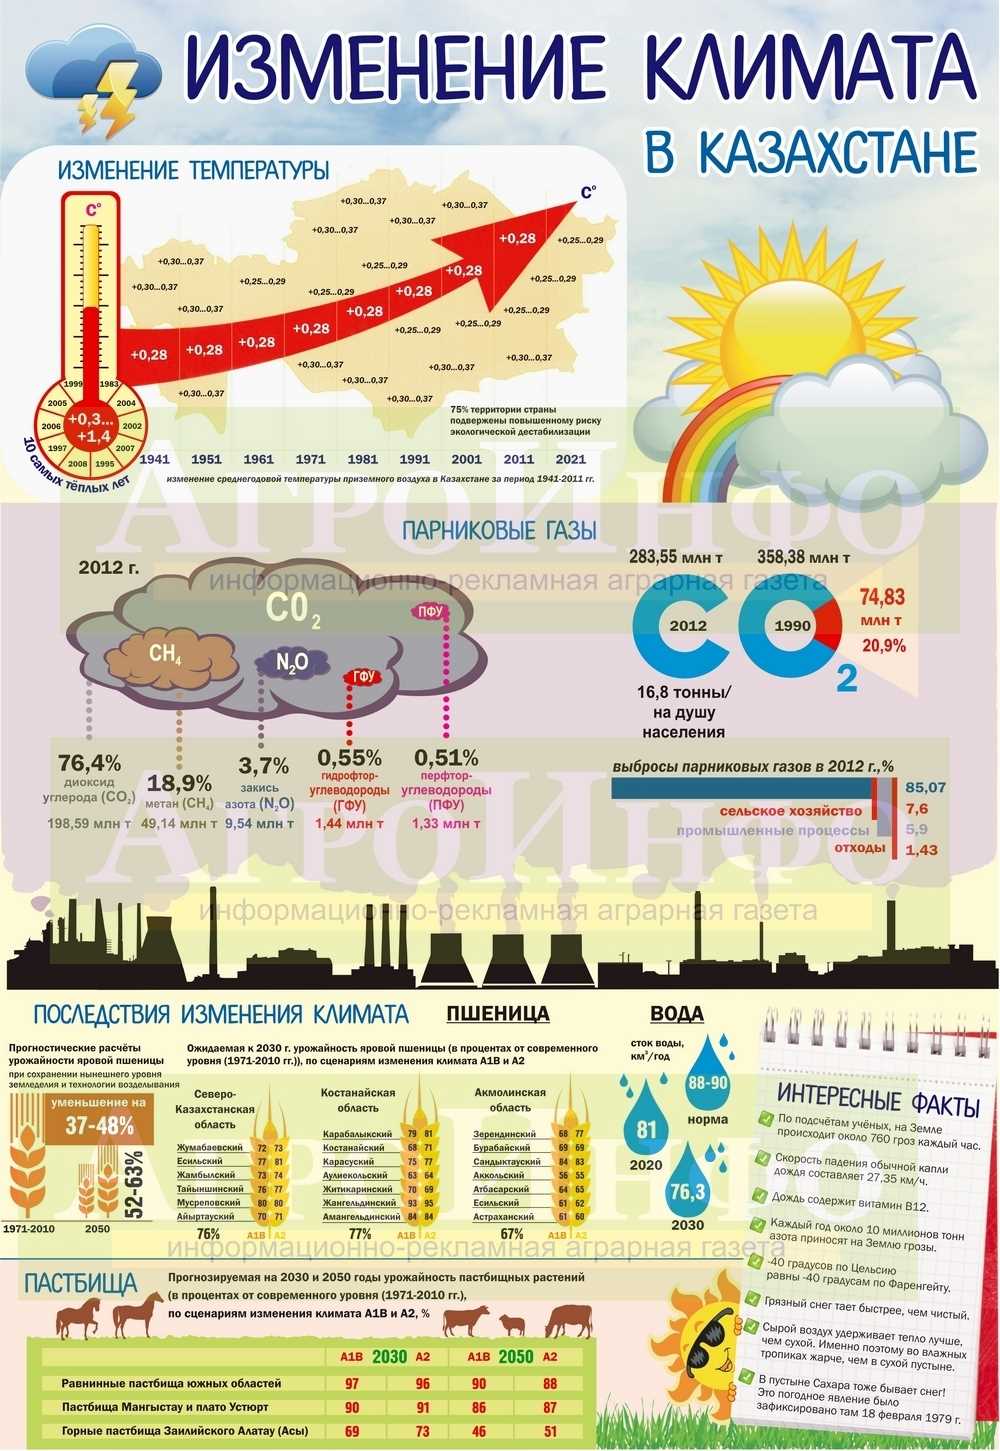 Атмосфера Кадомы: изменчивость погоды и неожиданные перепады температур